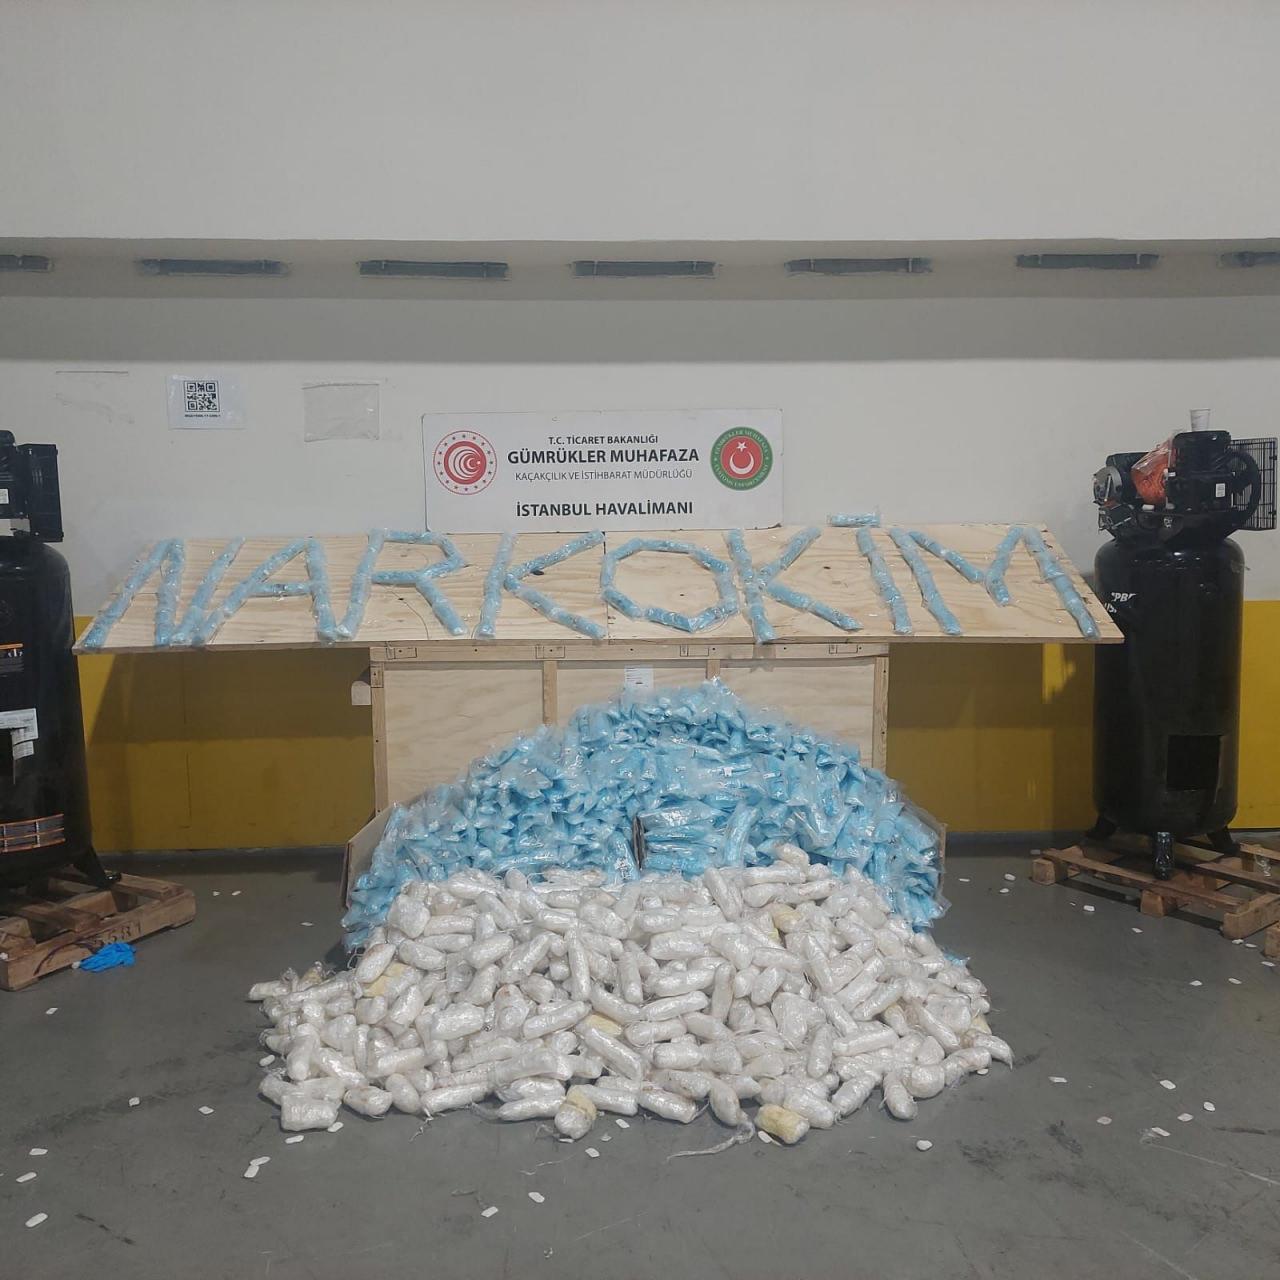 İstanbul Havalimanı'nda 427 kilogram metamfetamin ele geçirildi